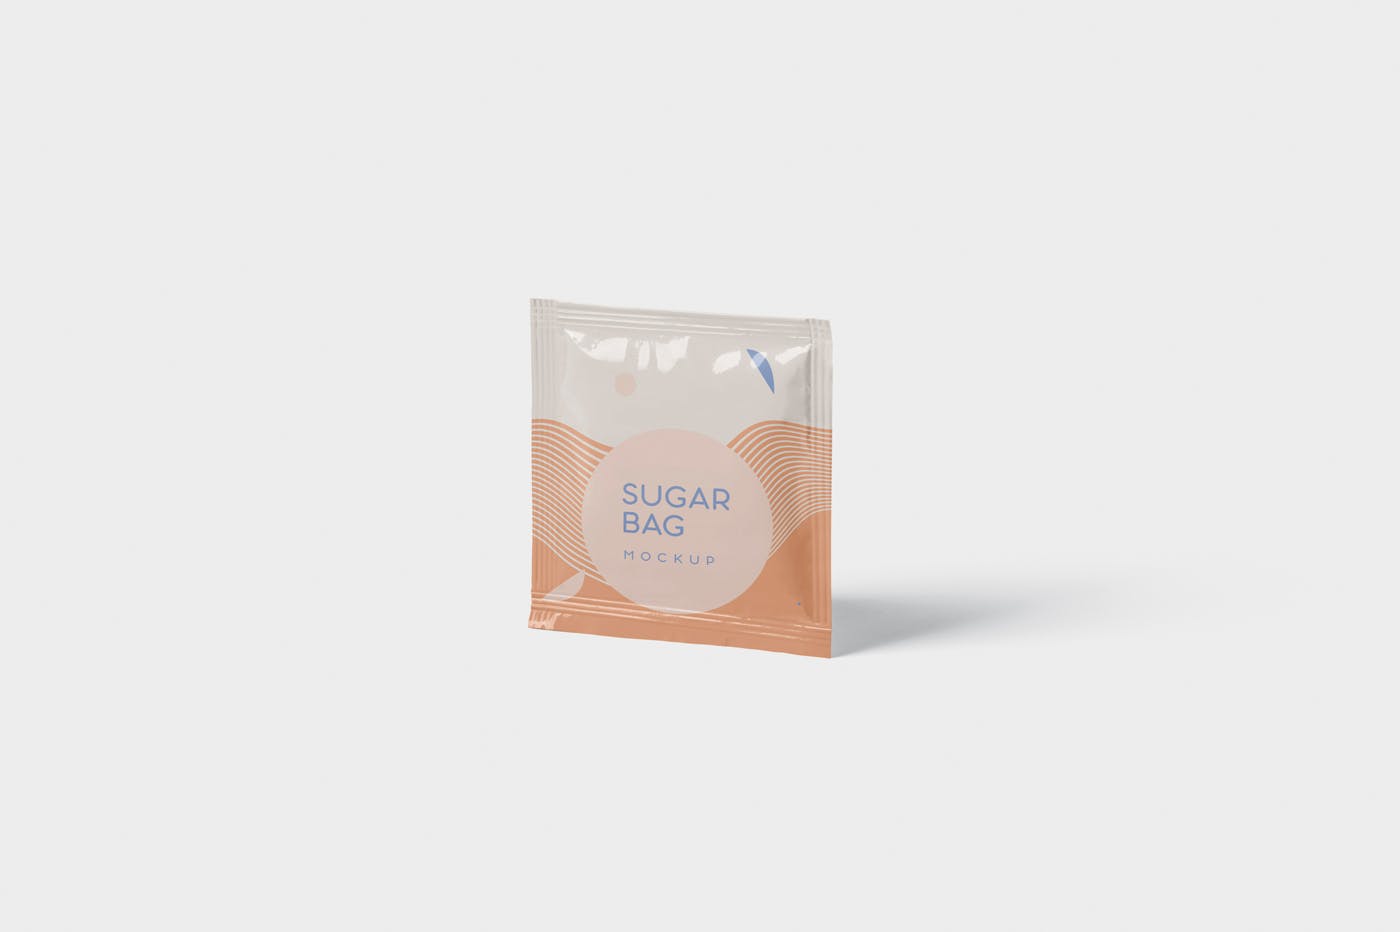 盐袋糖袋包装设计效果图大洋岛精选 Salt OR Sugar Bag Mockup – Square Shaped插图2